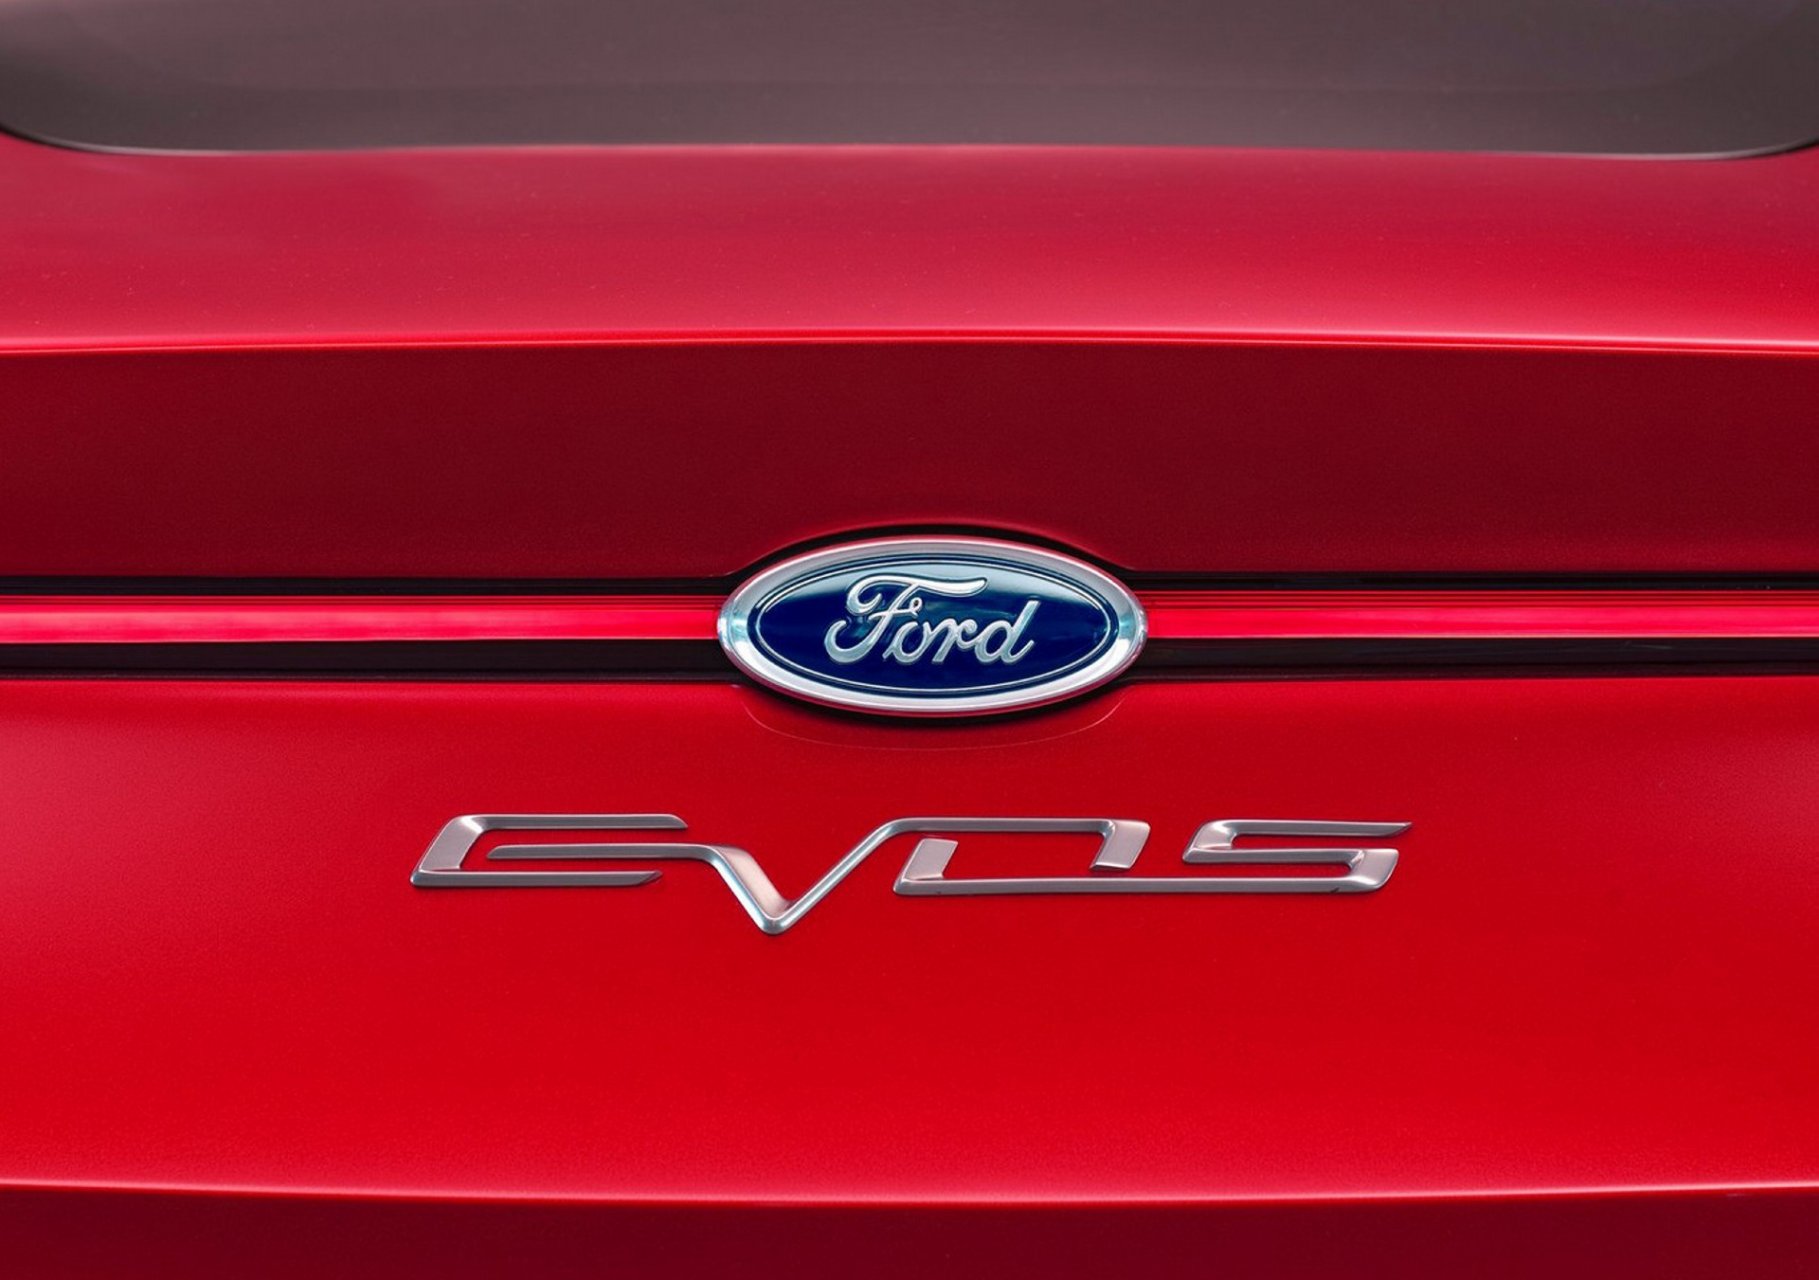 Ford registra el nombre Mondeo Evos para Europa y Oceanía